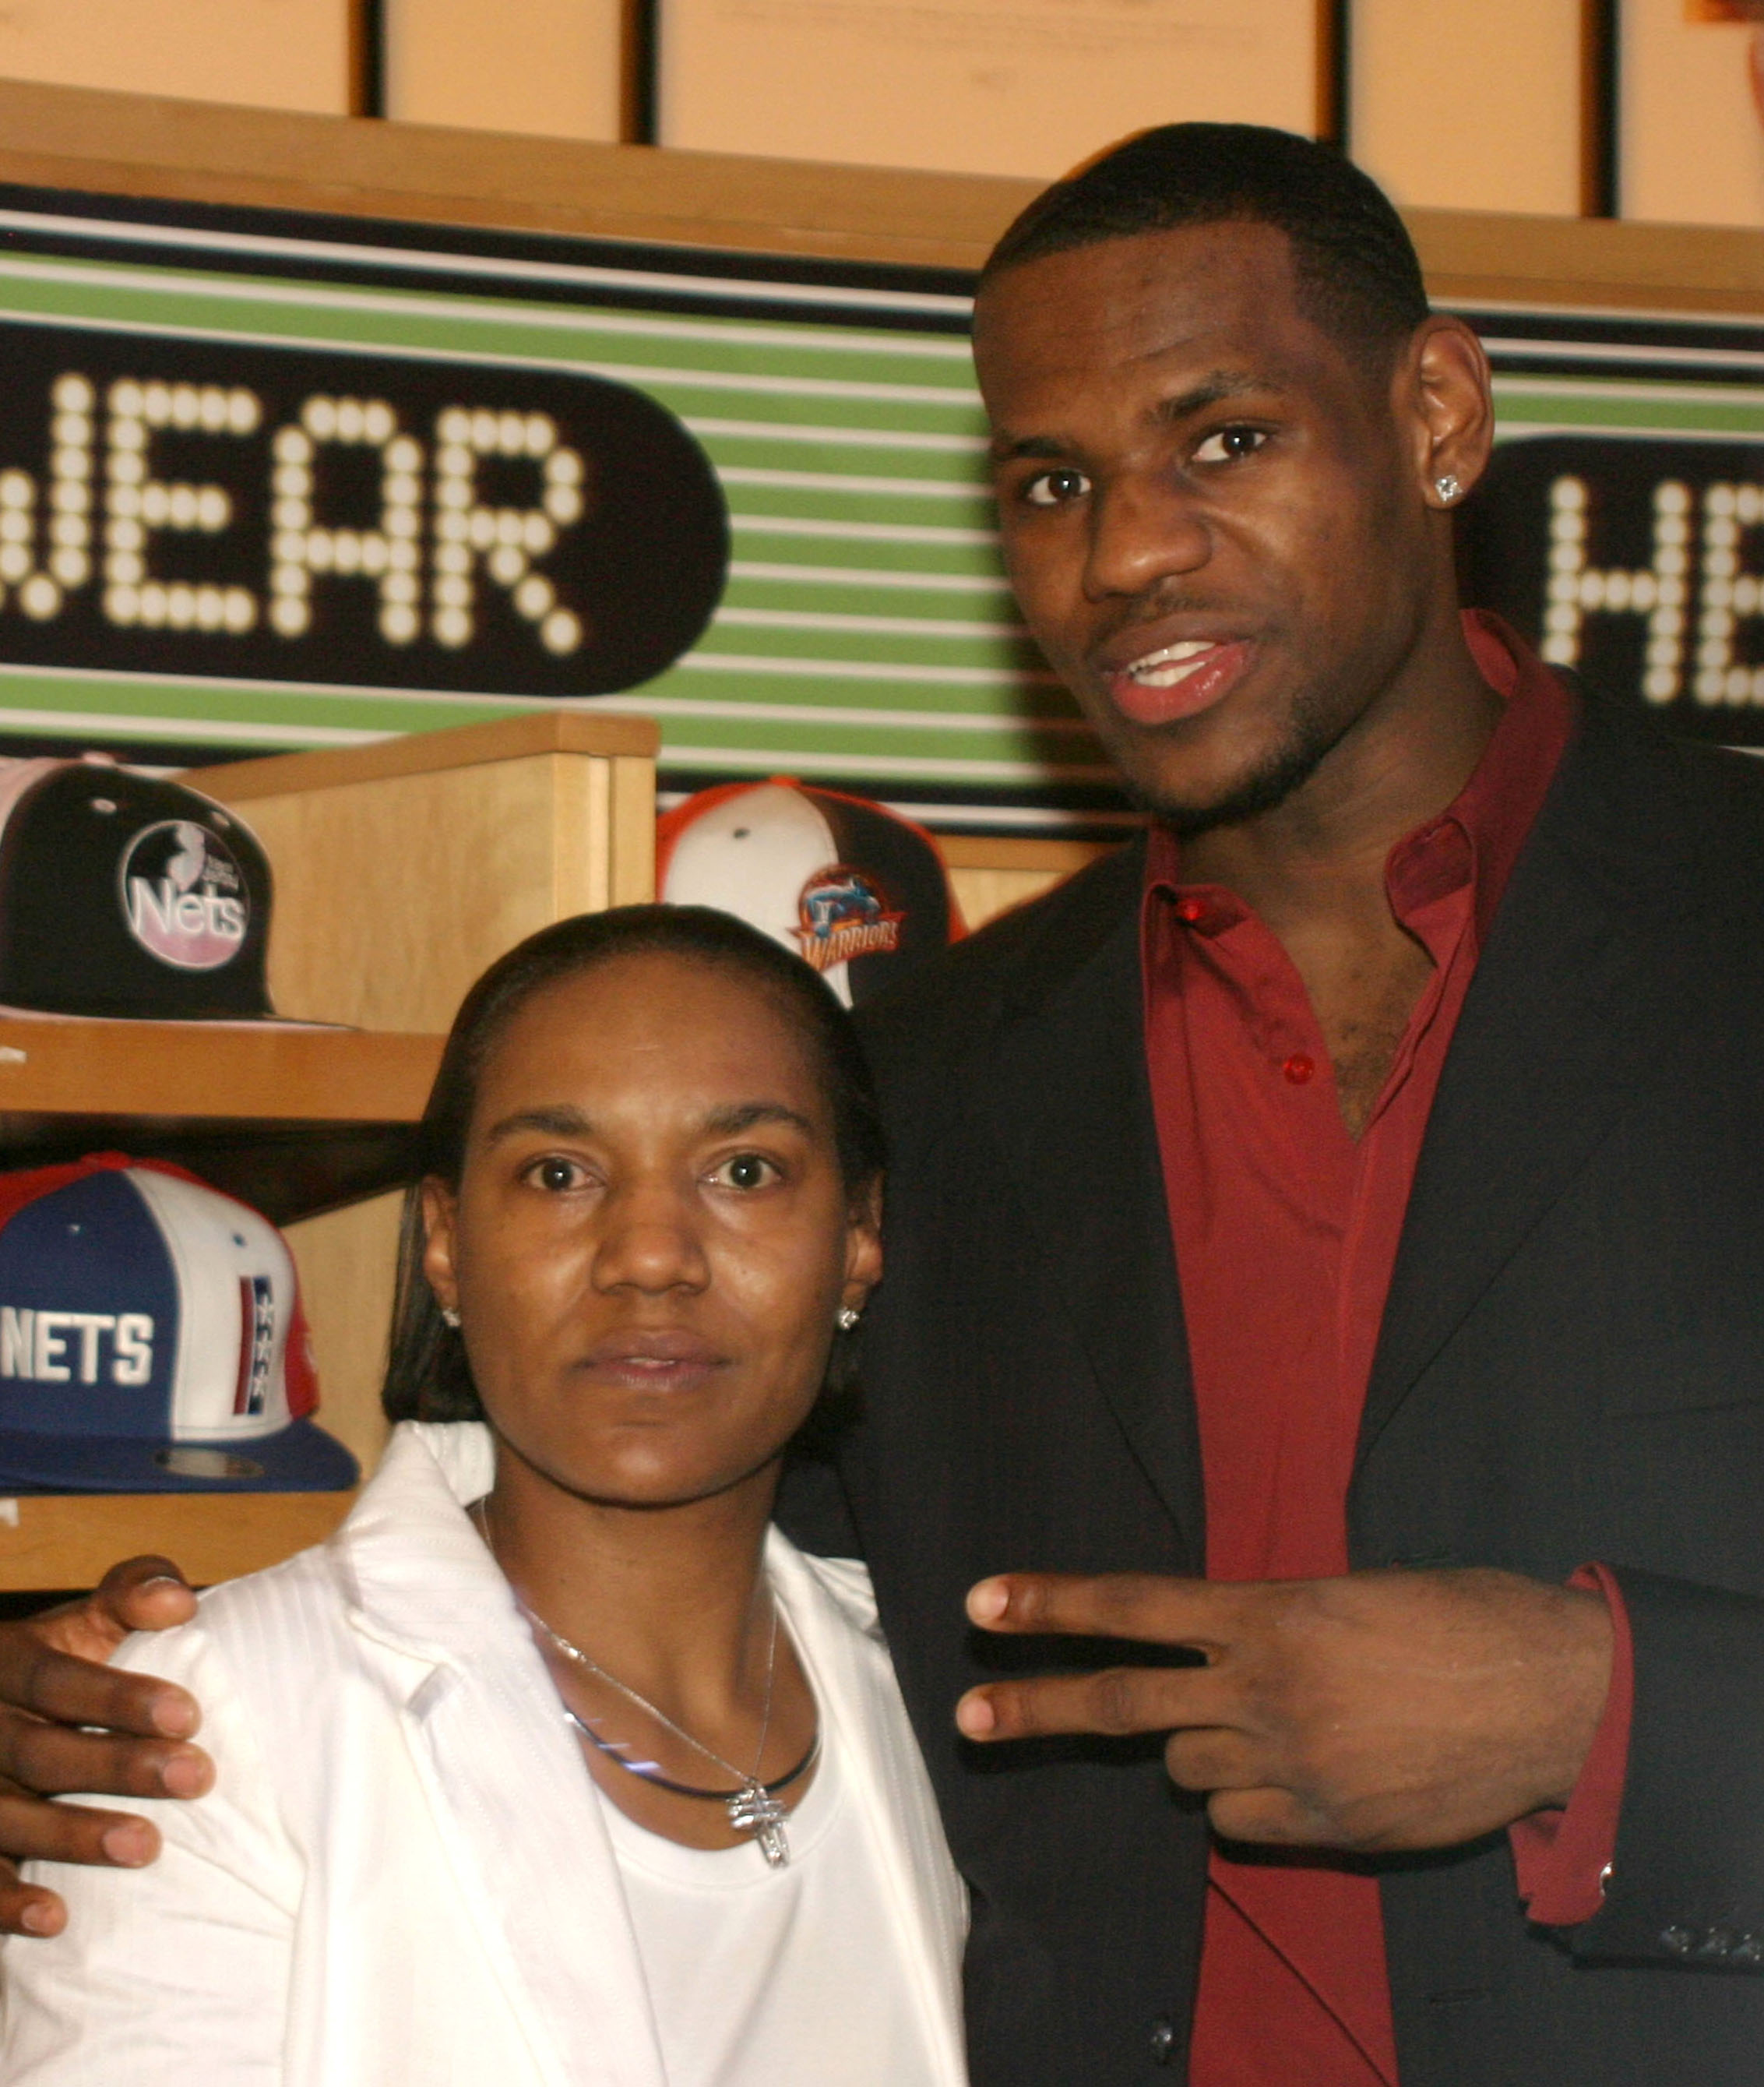 Lebron James et sa mère Gloria pendant la cérémonie Got Milk ? NBA Rookie Of The Year 2004 présenté à LeBron James le 20 avril 2004 à New York City | Source : Getty Images